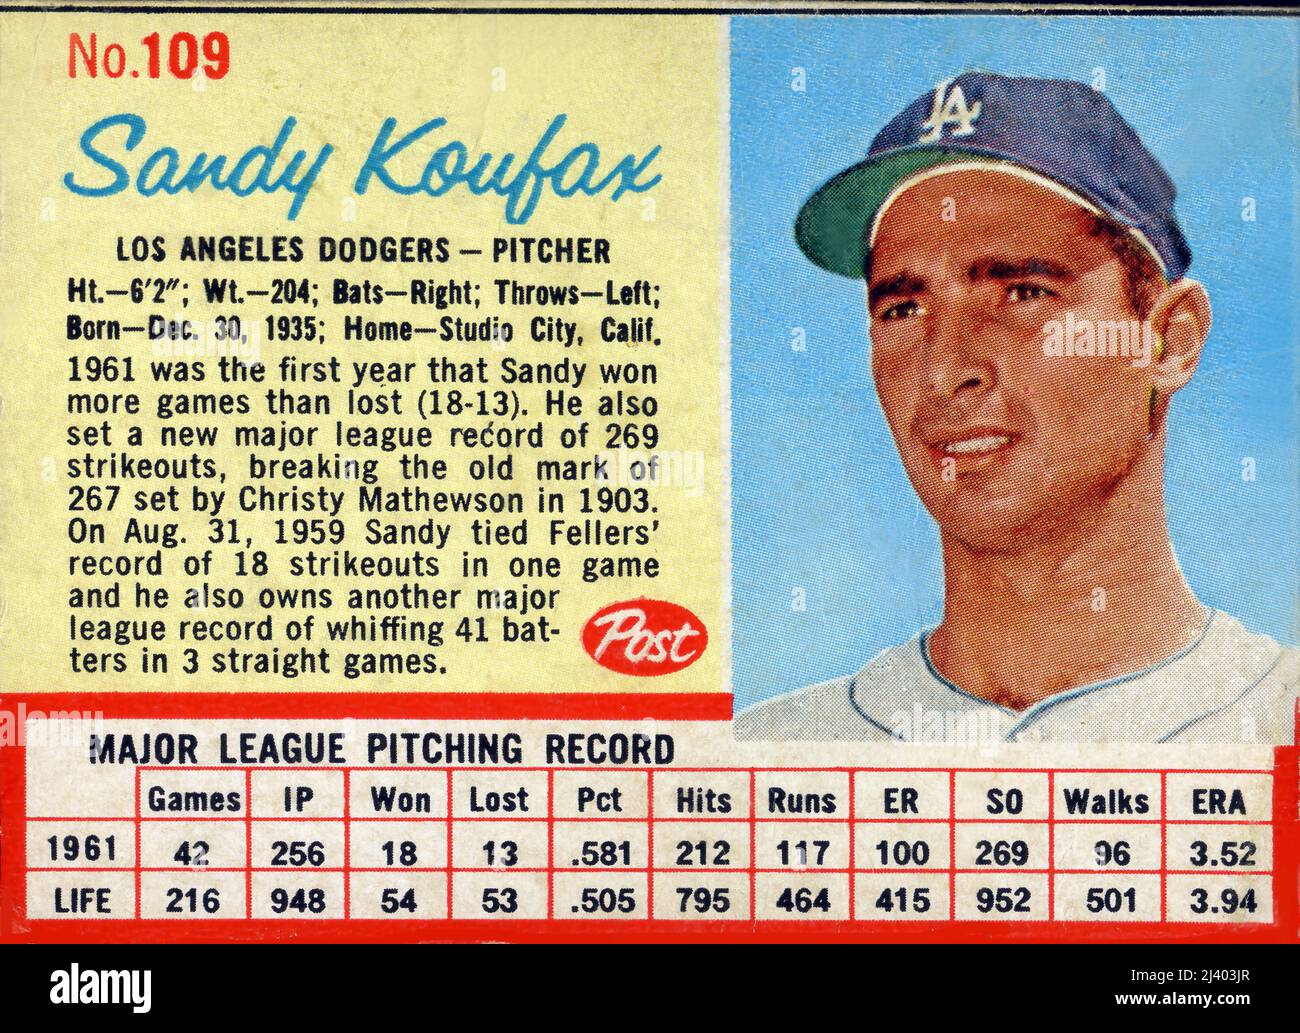 Una carta da baseball stampata sul retro di una scatola di cereali Post come premio per far comprare i bambini presenta la caraffa star dei Los Angeles Dodgers Sandy Koufax nel 1962. Foto Stock